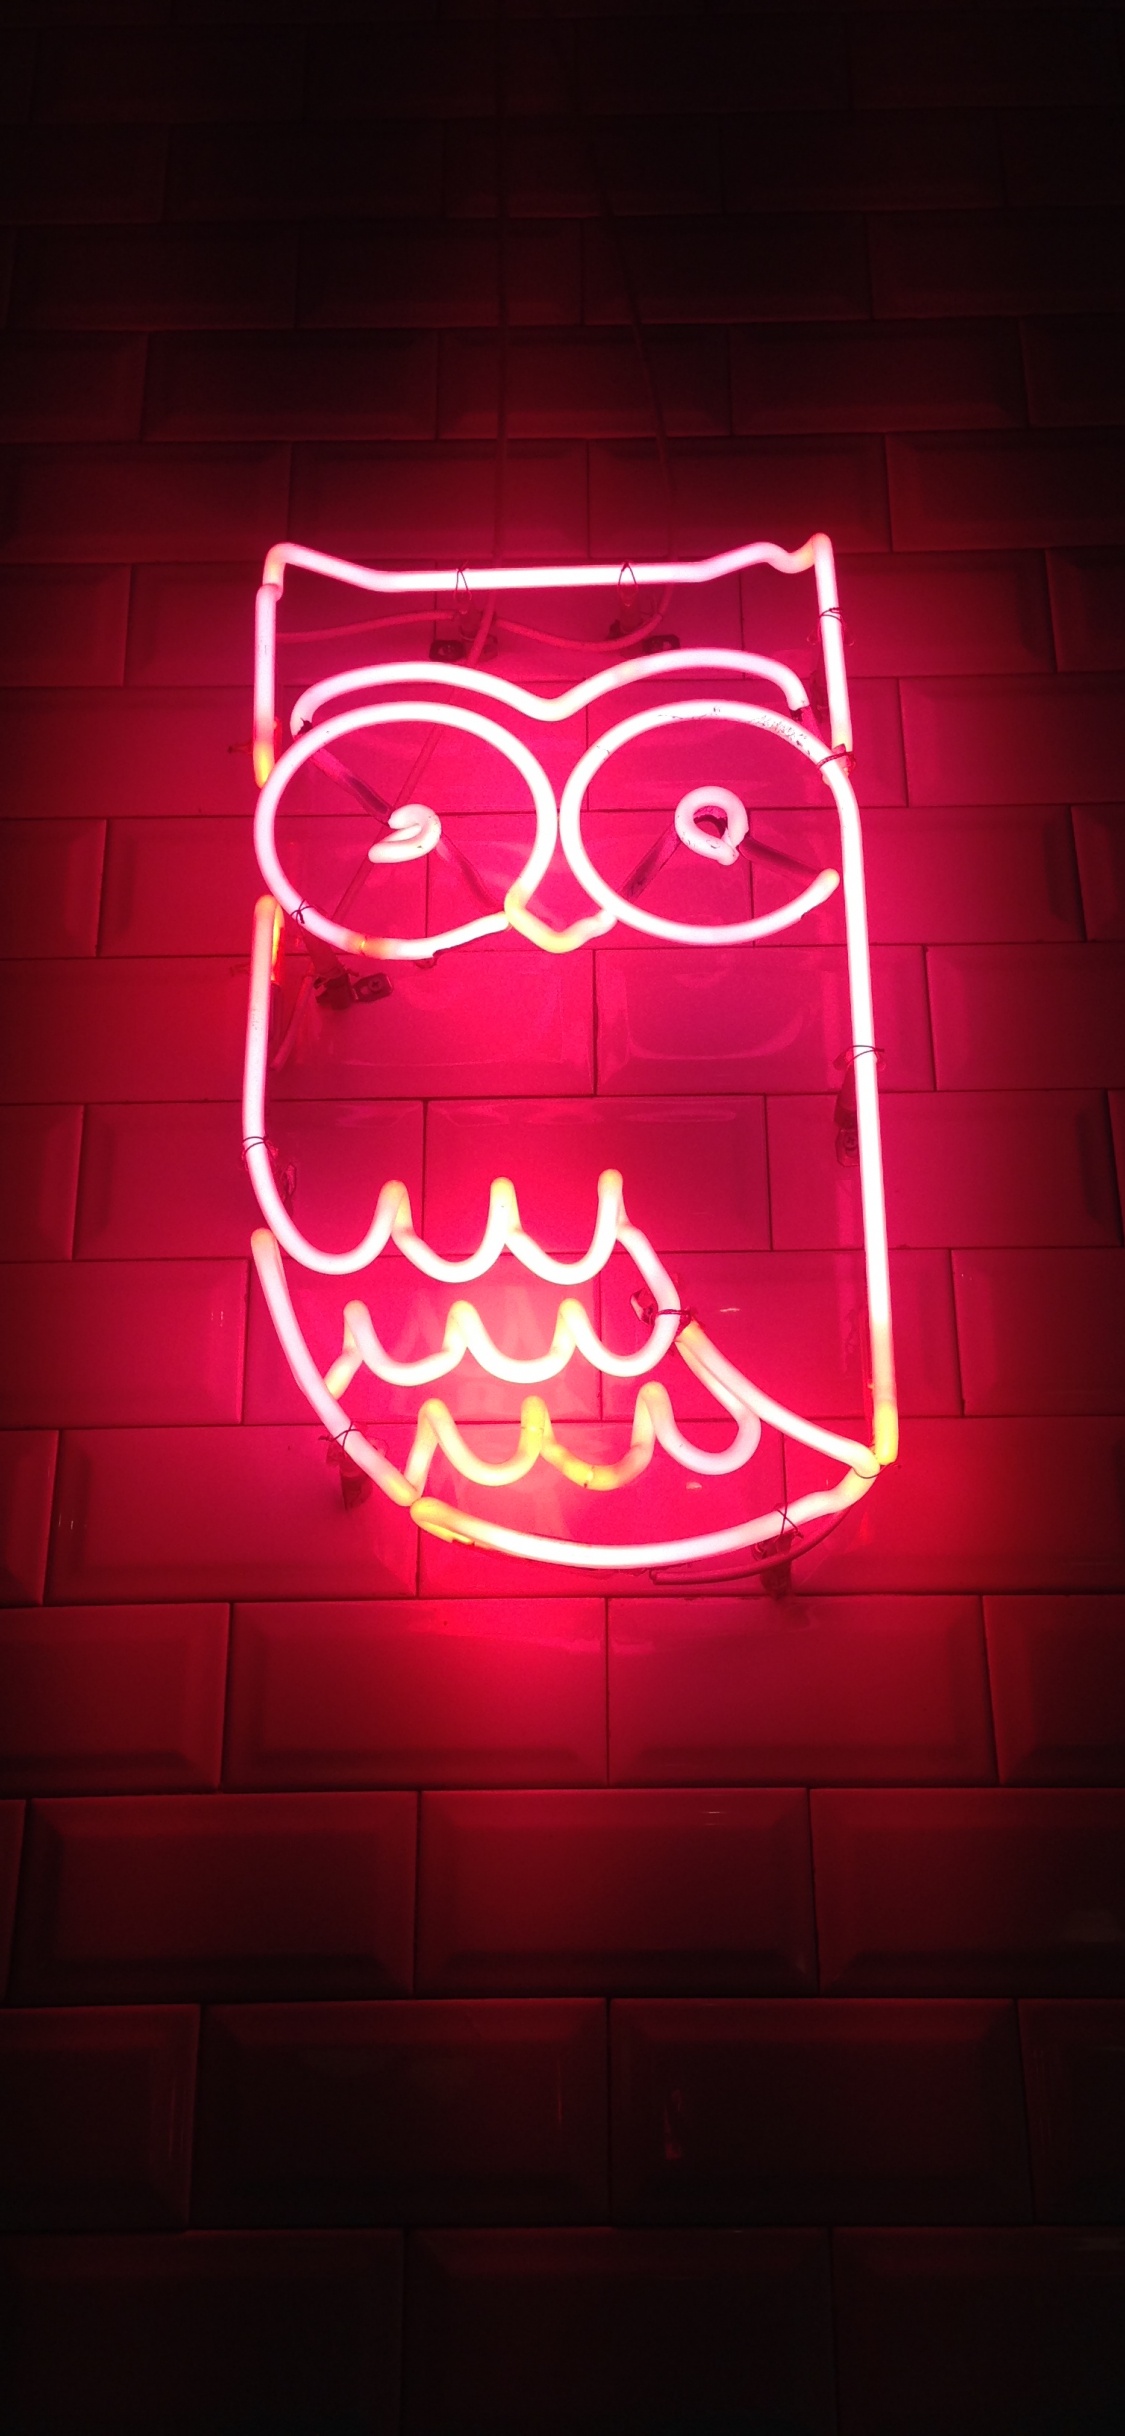 Aesthetic Neon Owl, Owls, Neon, Neon Lighting, Light. Wallpaper in 1125x2436 Resolution